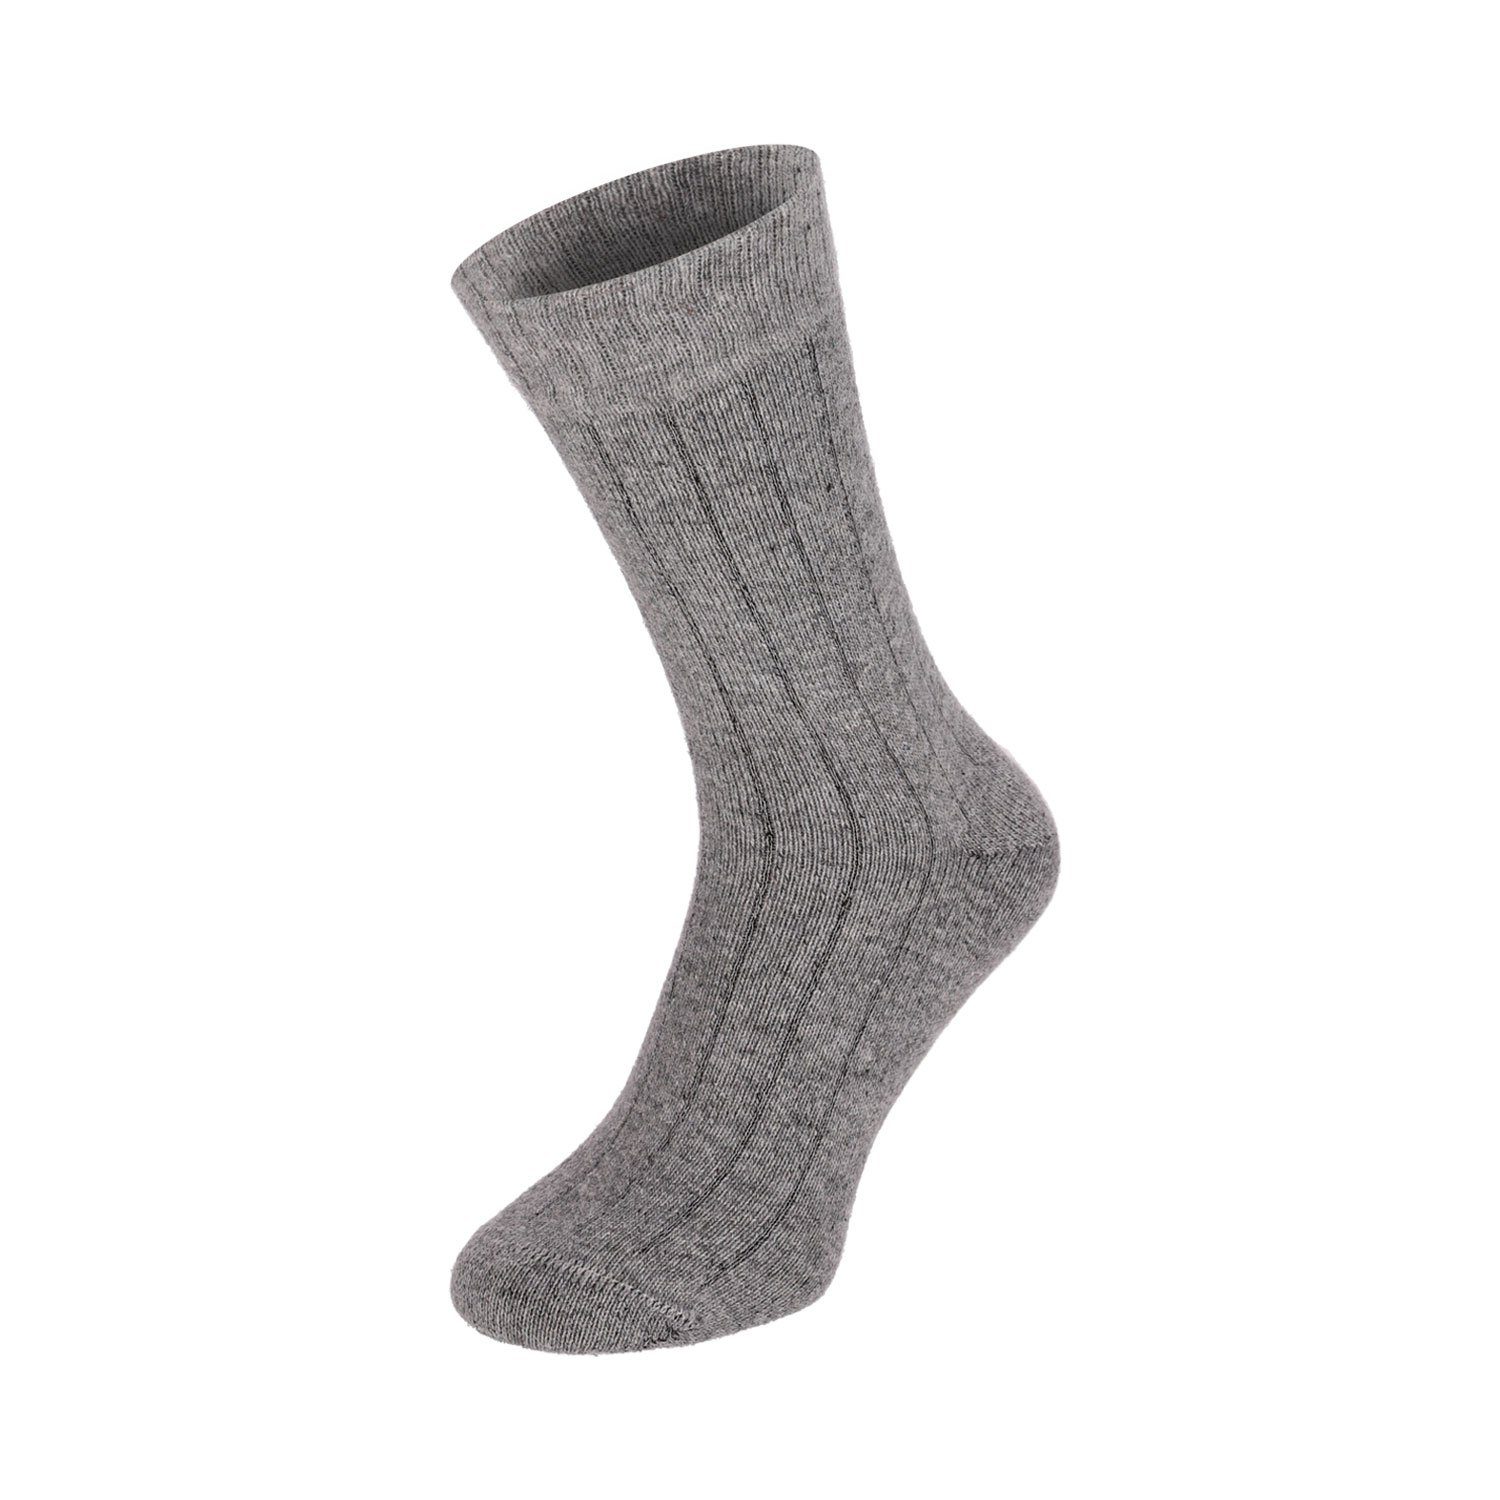 Super 2 Merino Winter Wolle Socken Strümpfe Extra Lifestyle Soft Chili Paar Herren Warm Damen